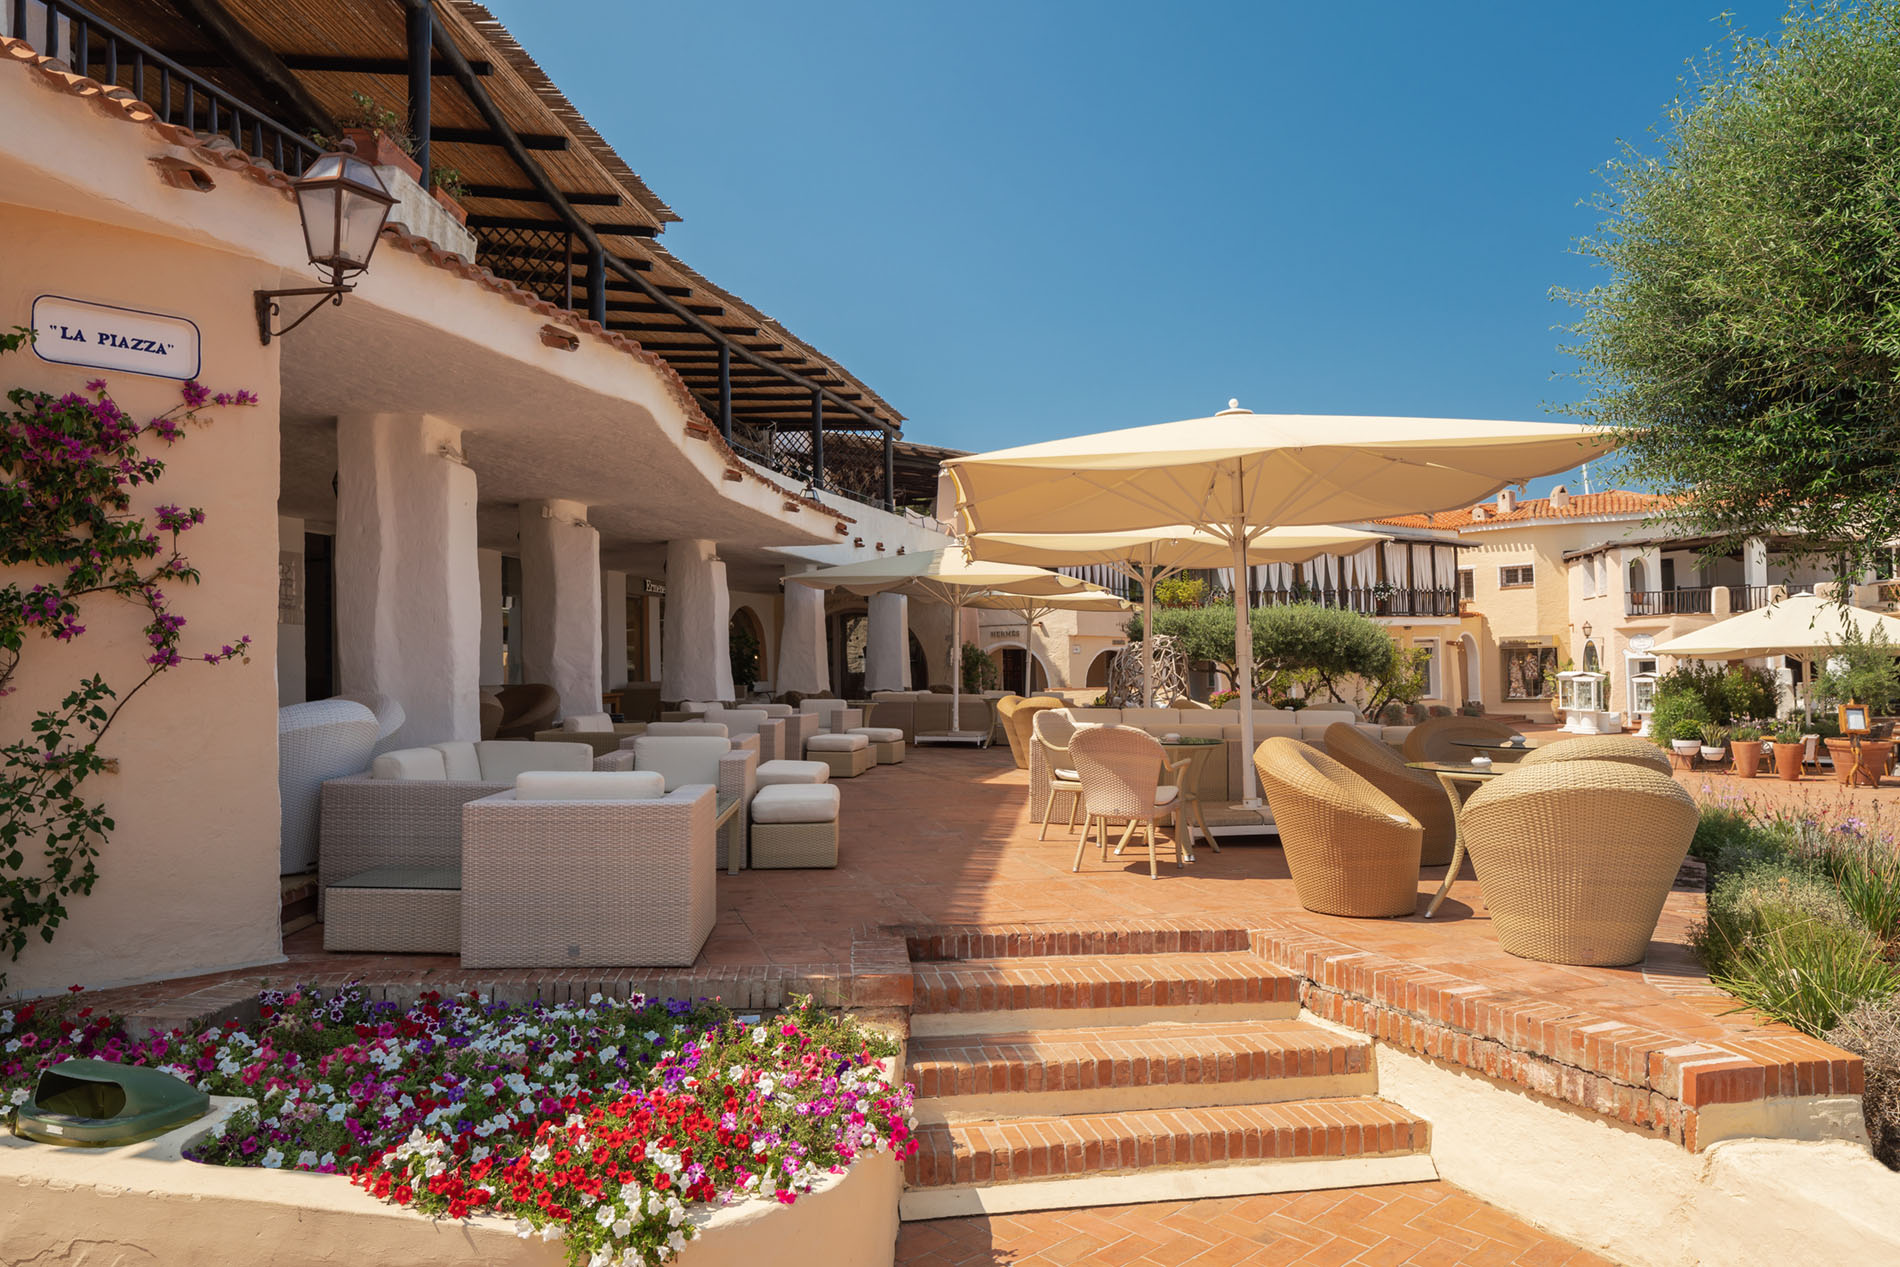 Smeralda Holding Partners with LVMH Hospitality for Romazzino & Pitrizza  Hotels